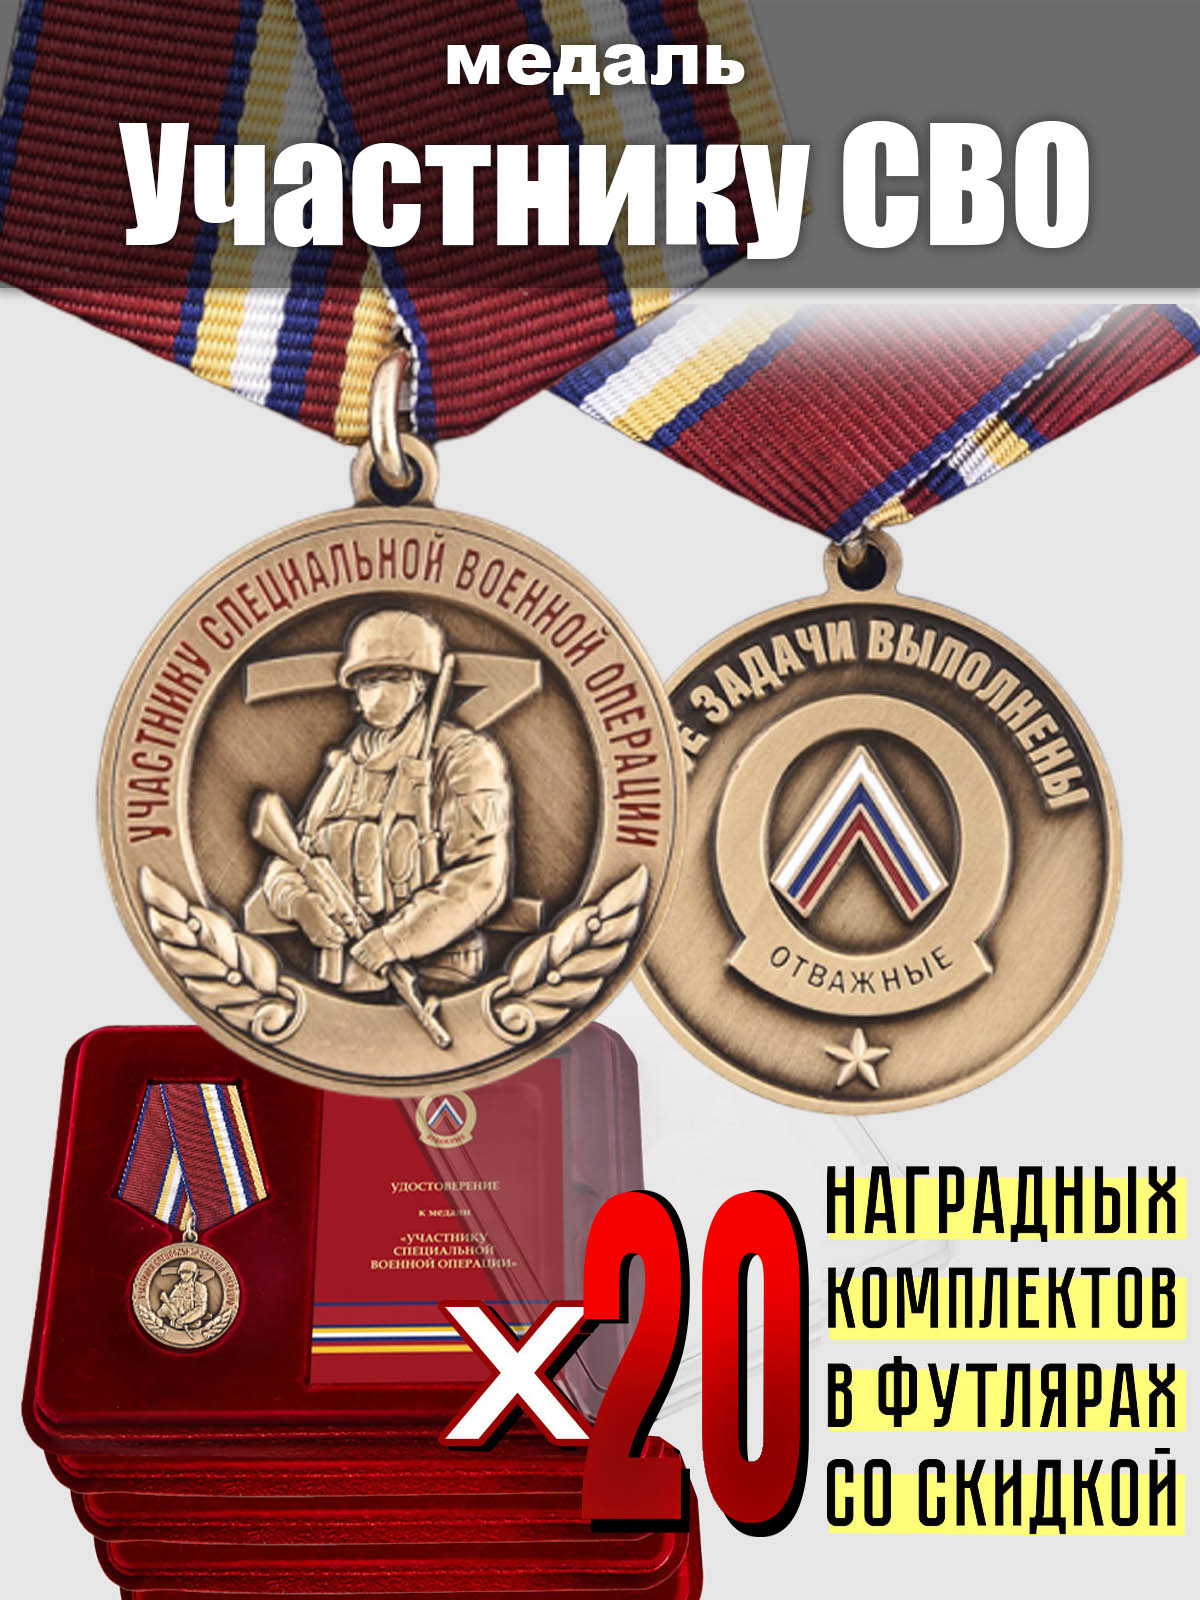 Наградные комплекты: медали "Участнику СВО" (20 шт.) 